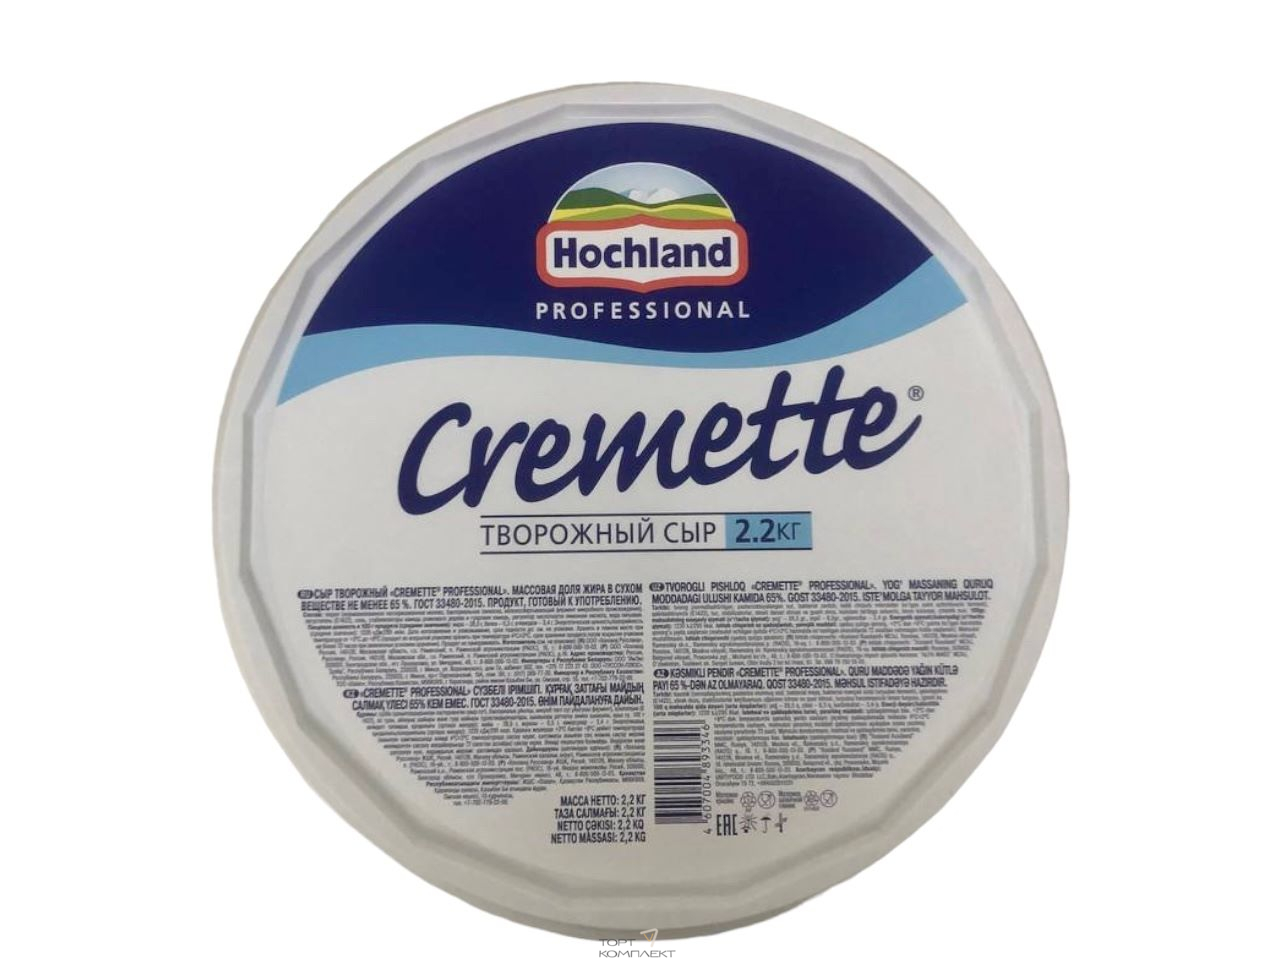 Сыр творожный Cremette 65% 2,2 кг